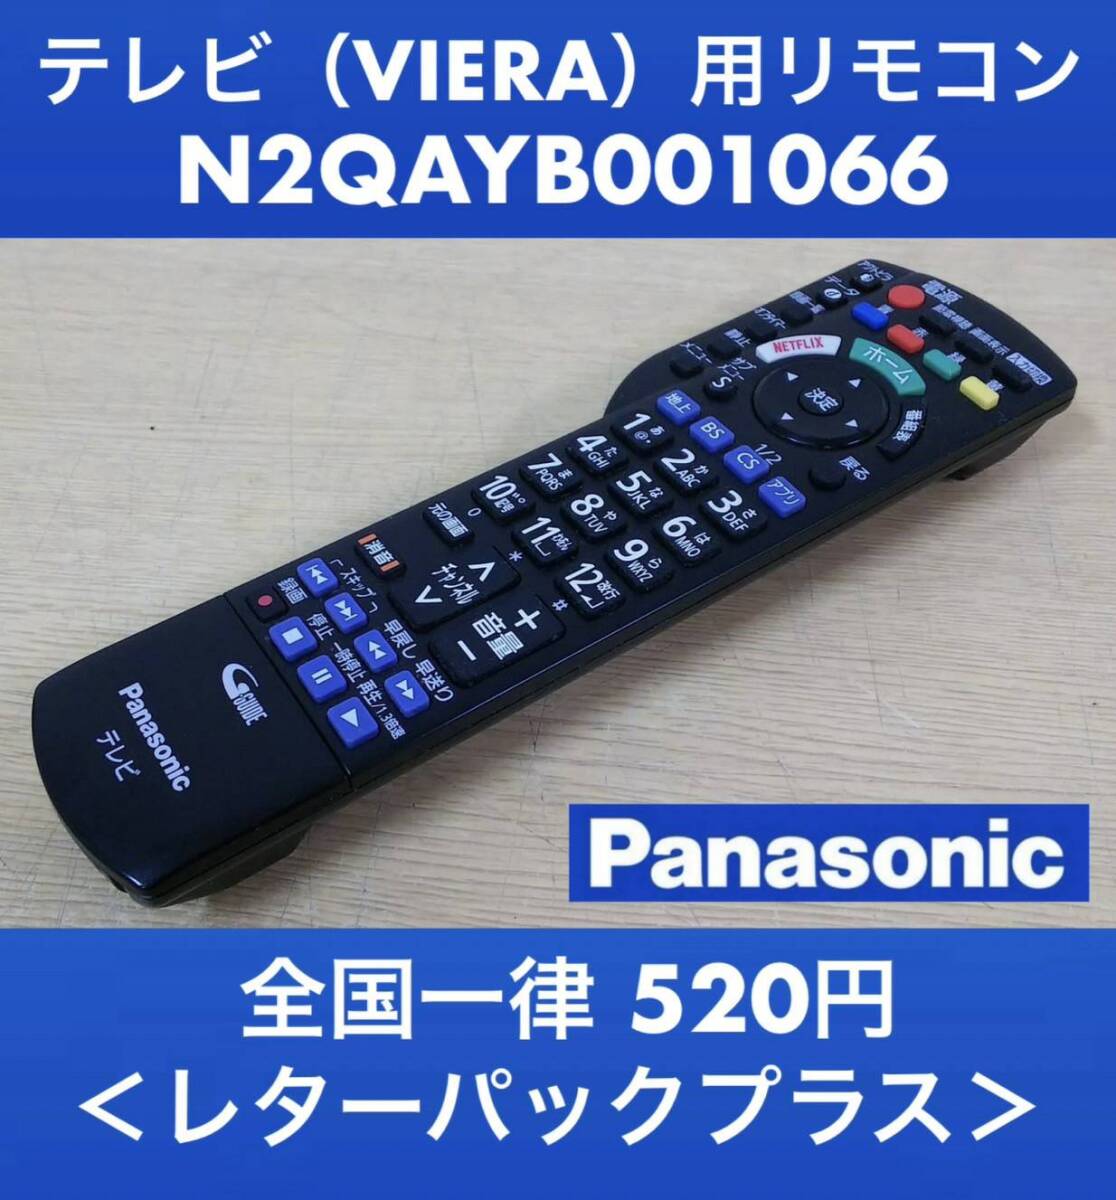  прекрасный товар Panasonic оригинальный телевизор (VIERA) для дистанционный пульт N2QAYB001066 инфракрасные лучи OK б/у 2 шт. иметь { изначальный дефект в работе гарантия }